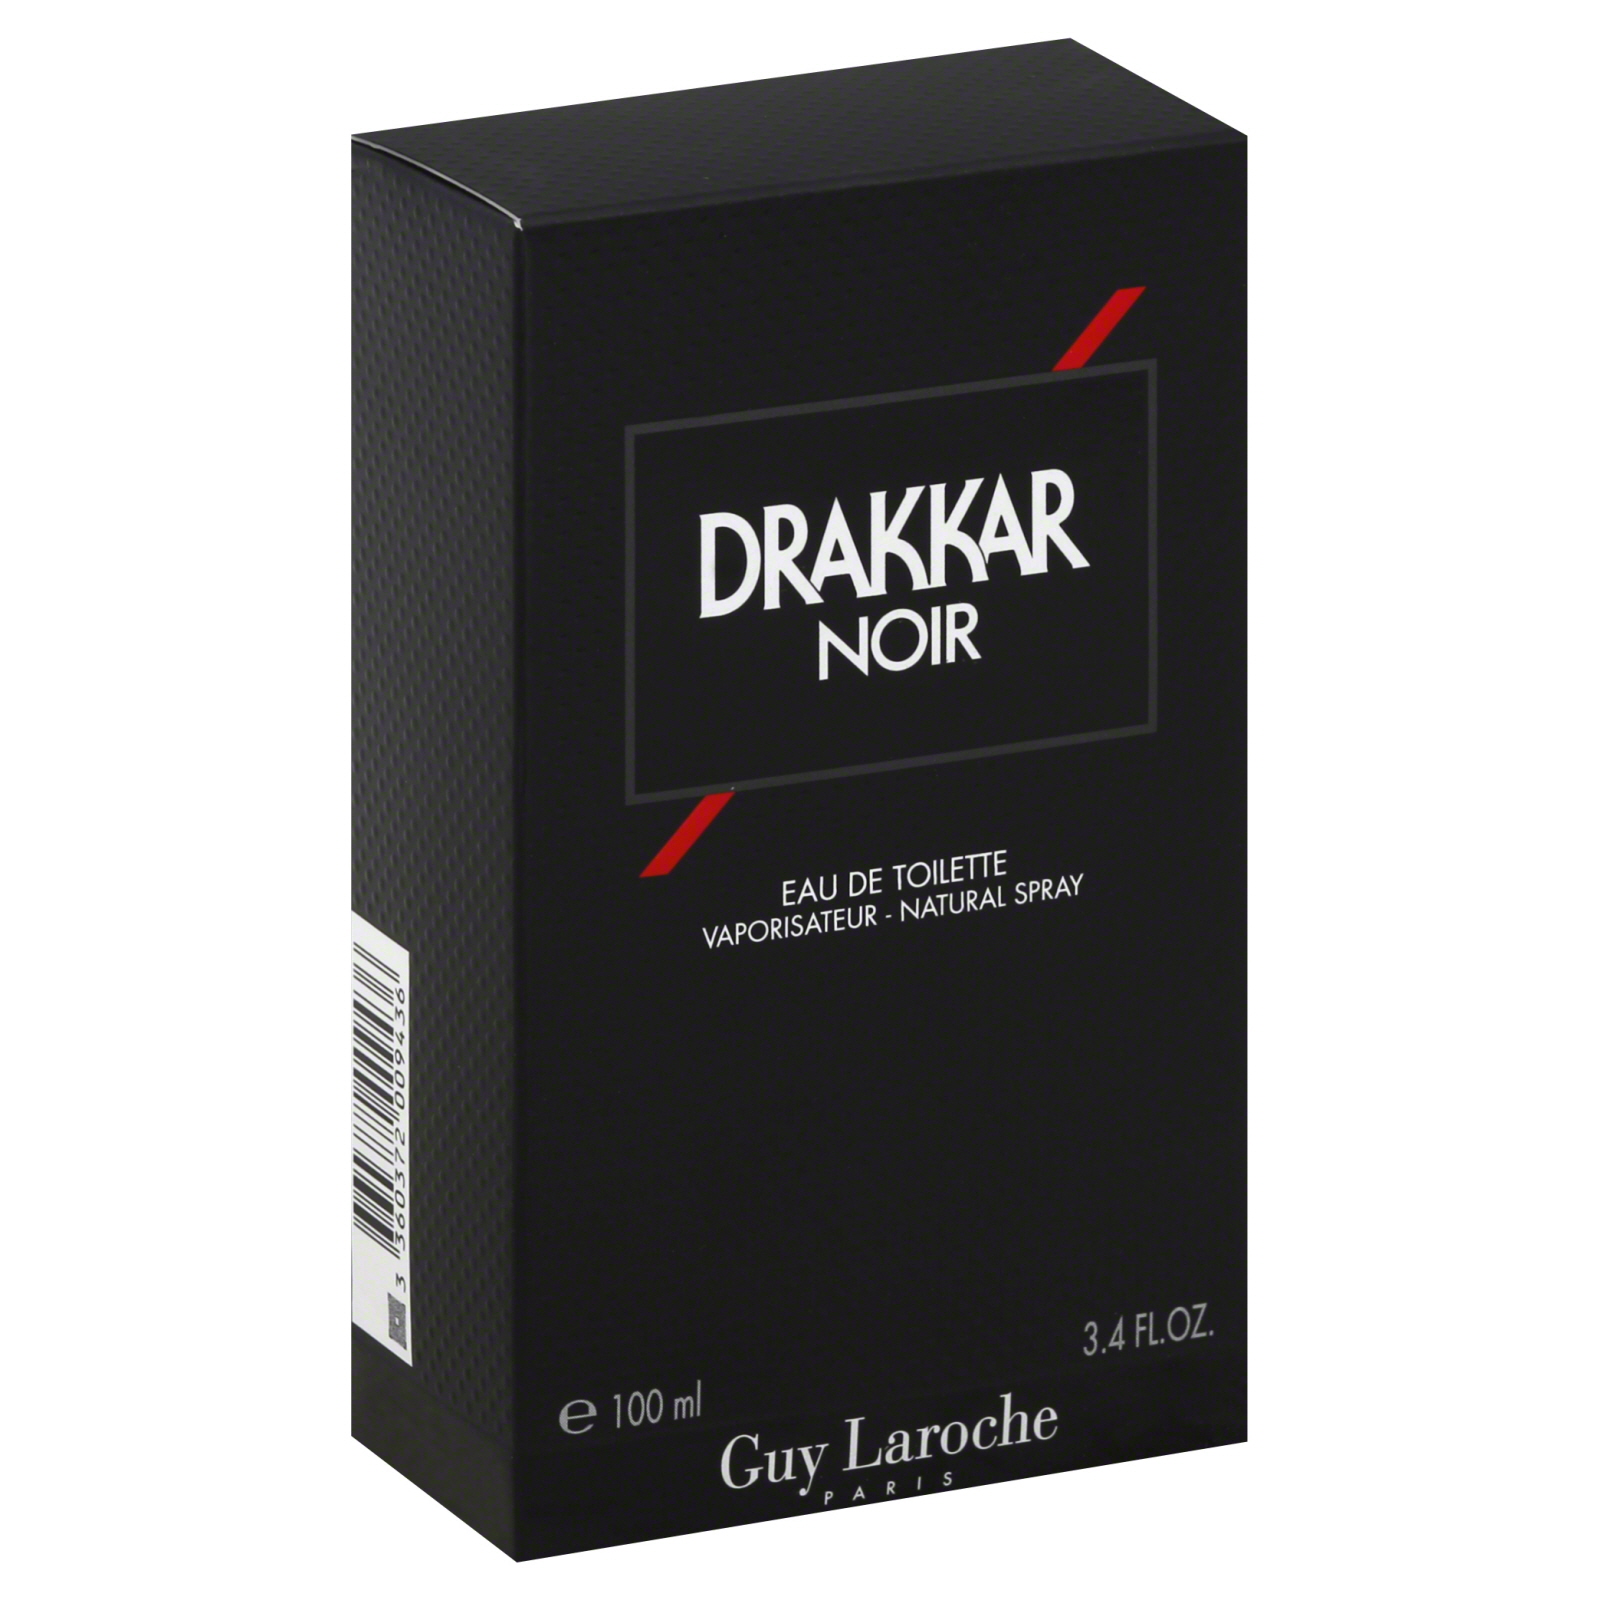 Drakkar Noir Eau de Toilette Natural Spray, 3.4 fl oz